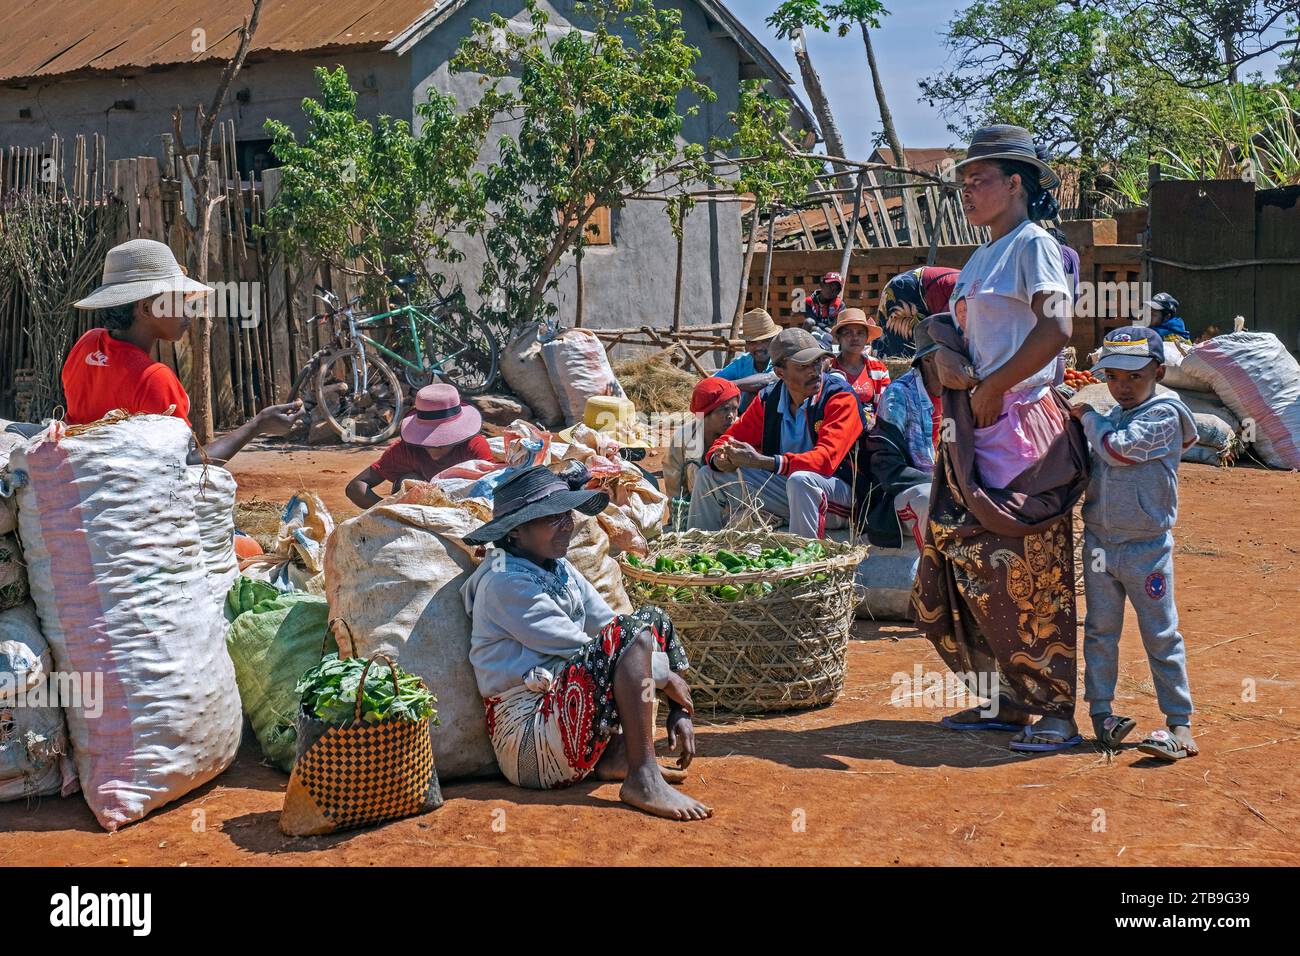 Vendeurs malgaches vendant des fruits et légumes au marché alimentaire dans les rues de la ville Ambalavao, haute Matsiatra, Hautes terres centrales, Madagascar, Afrique Banque D'Images